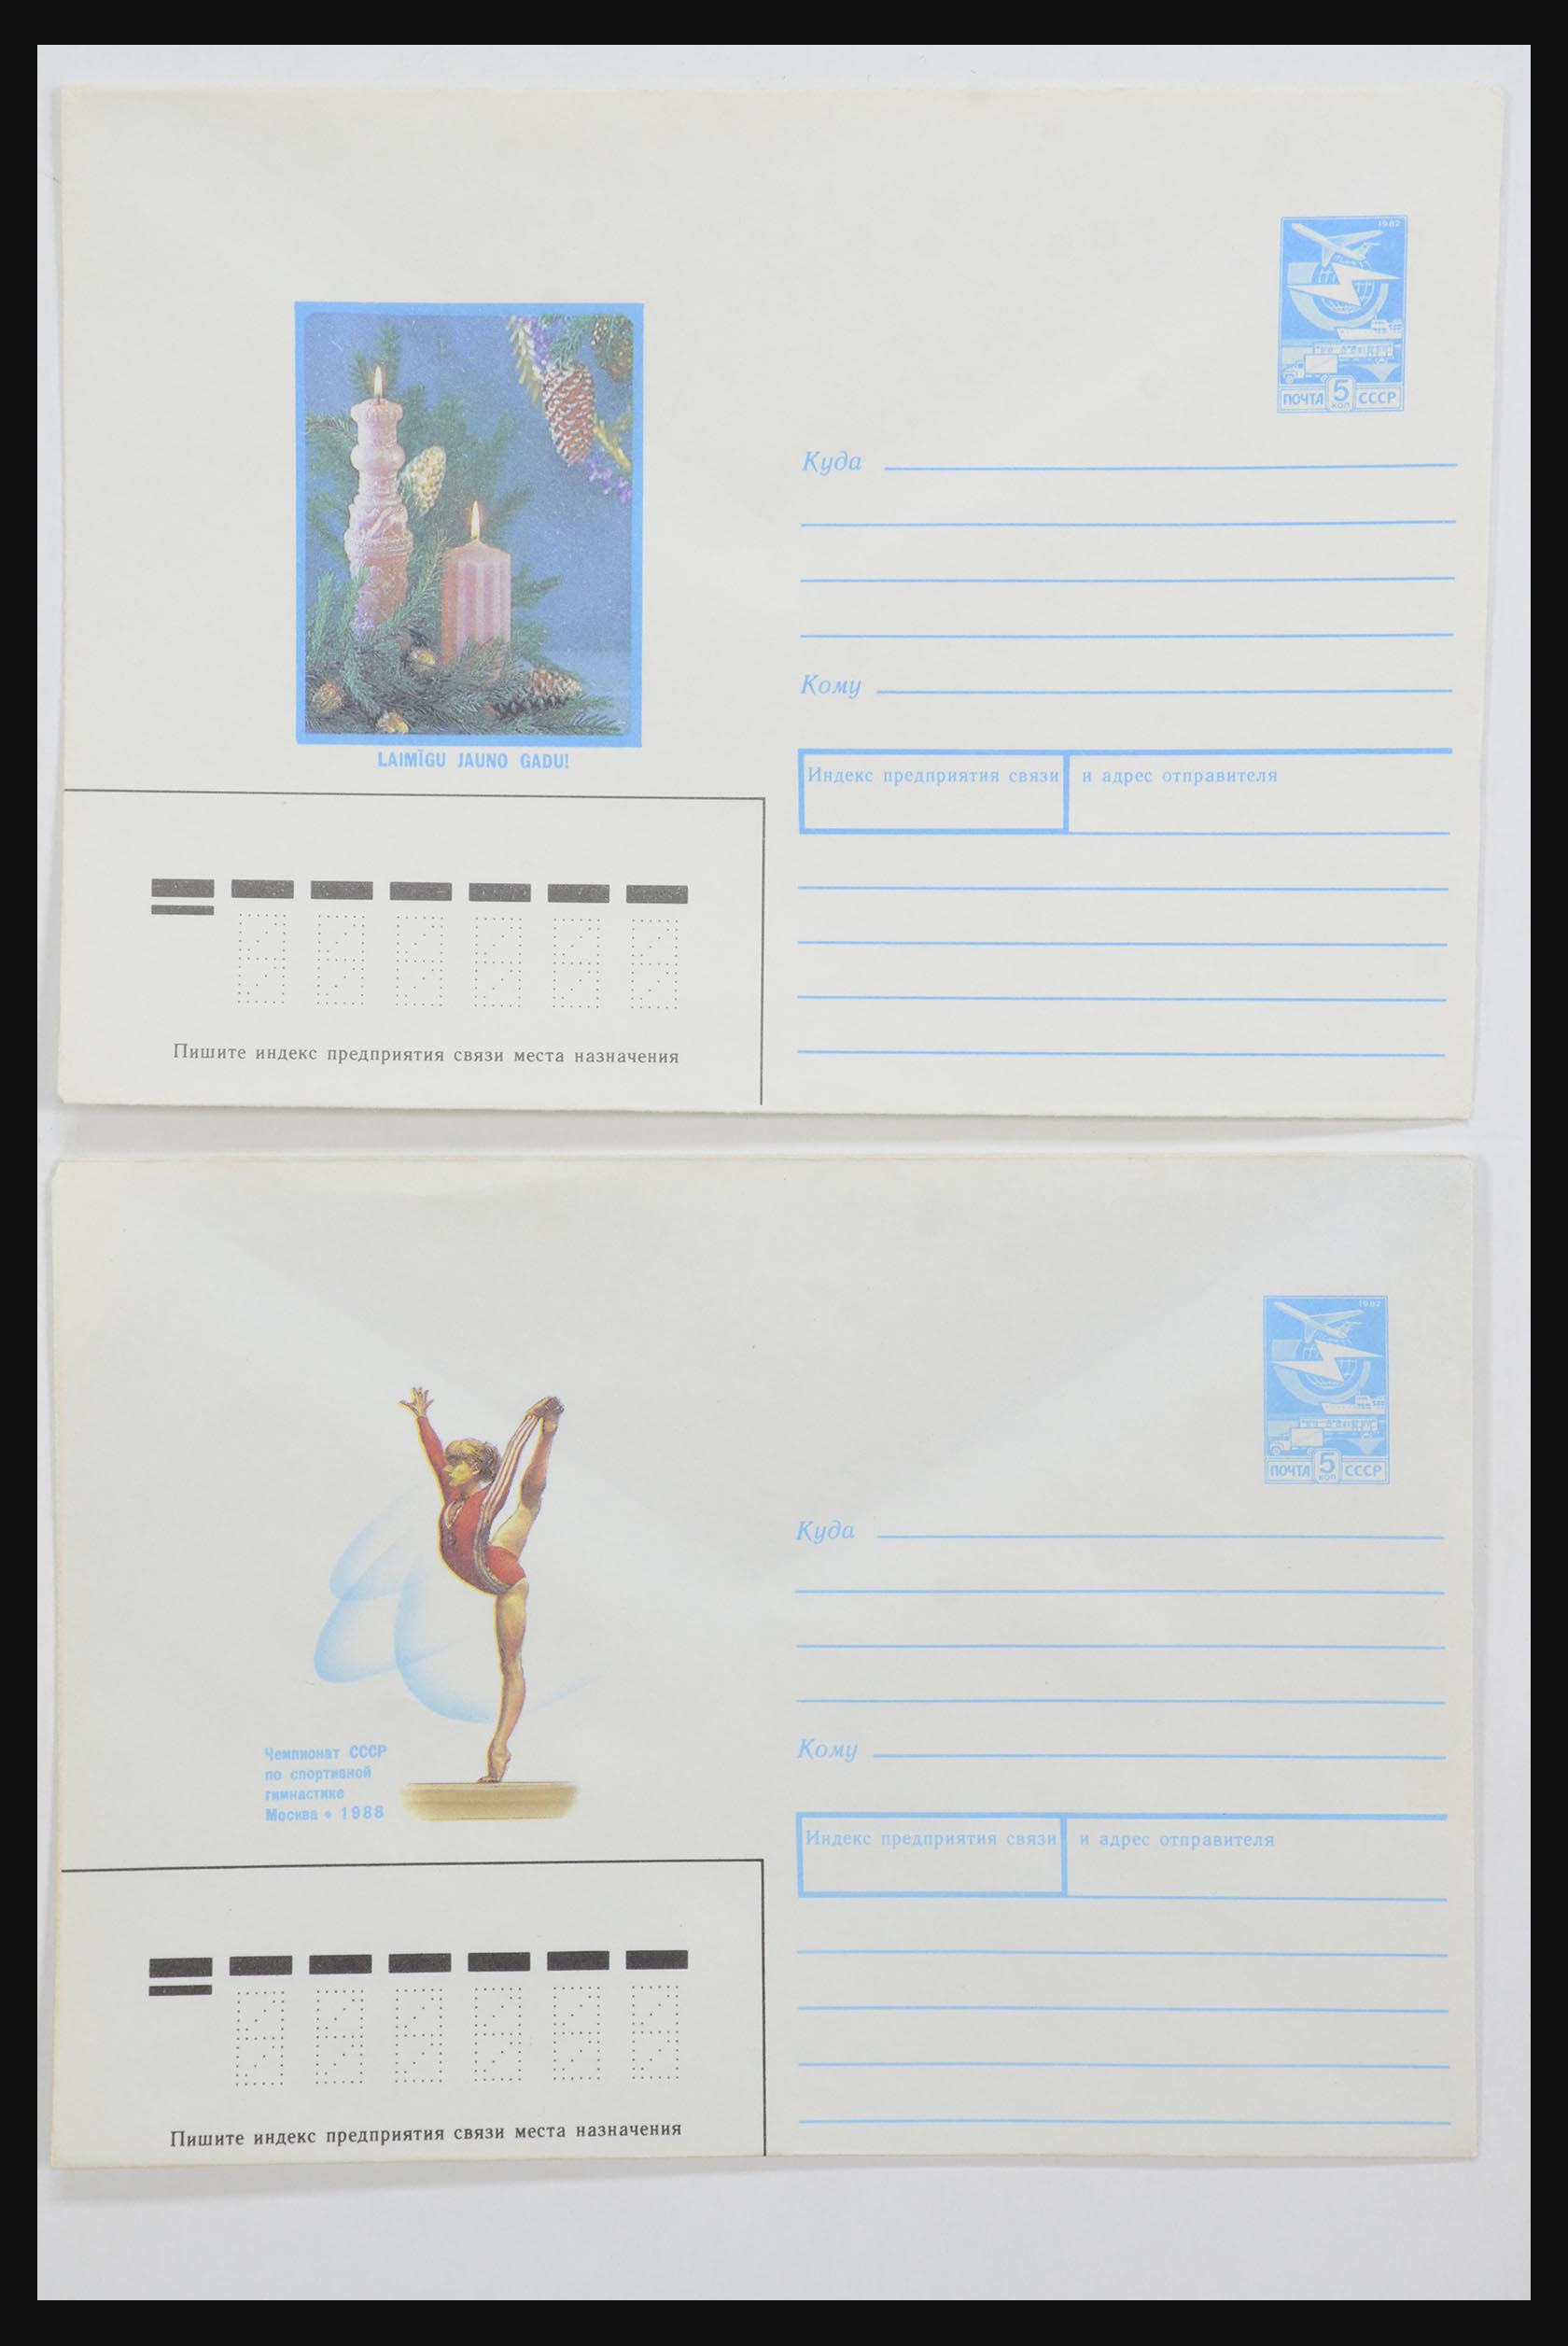 31928 0006 - 31928 Oost Europa brieven jaren 60/90.